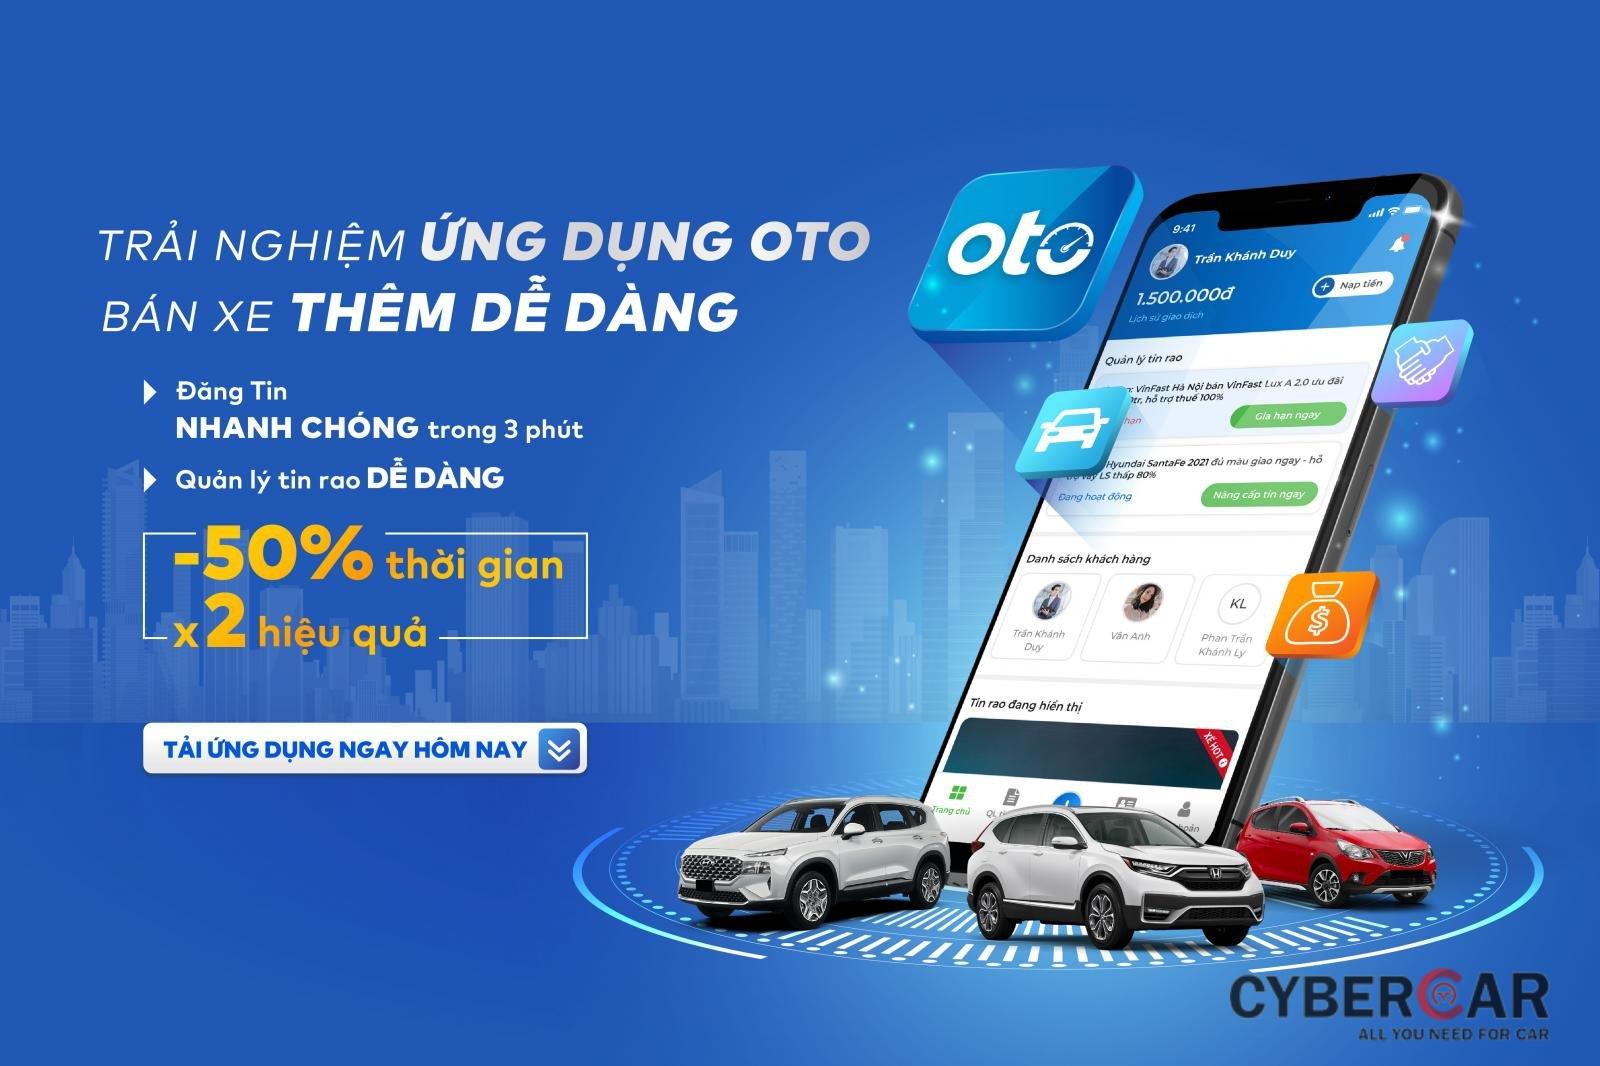 Phiên bản điện thoại của oto.com.vn với nhiều tính năng ưu việt cho các nhà kinh doanh xe chuyên nghiệp.